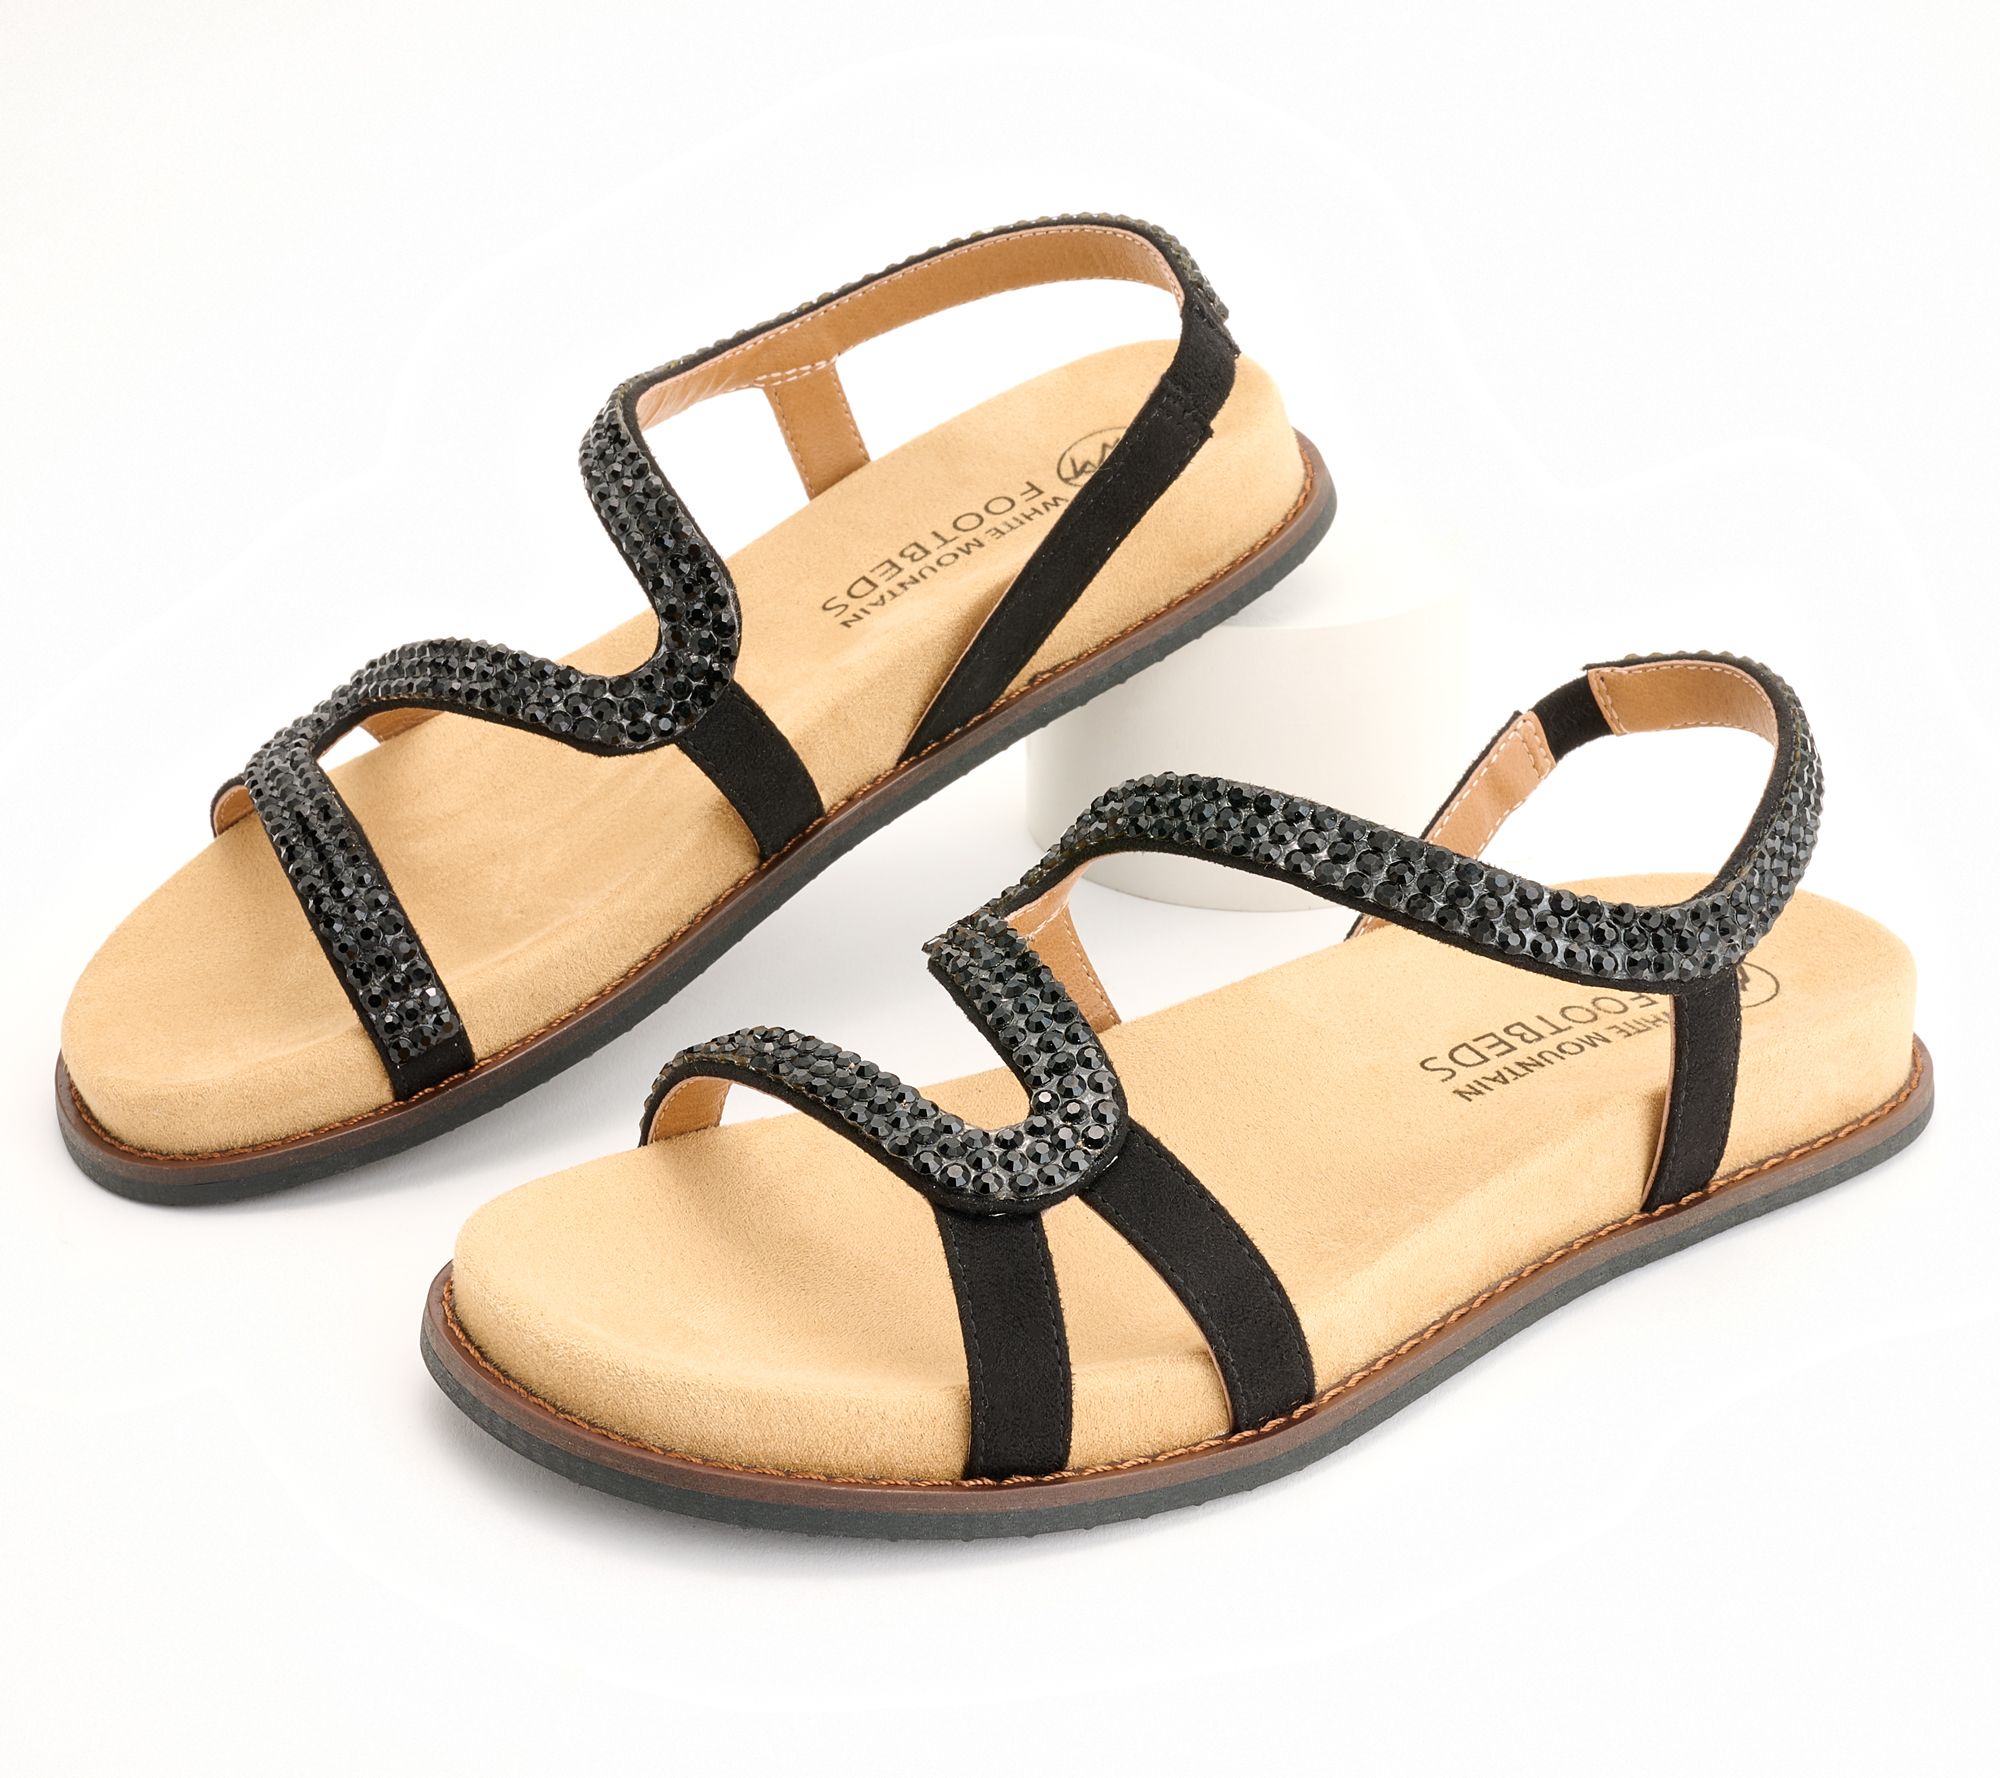 Buy Women's Le Confort Embellished Slip-On Sandals Online